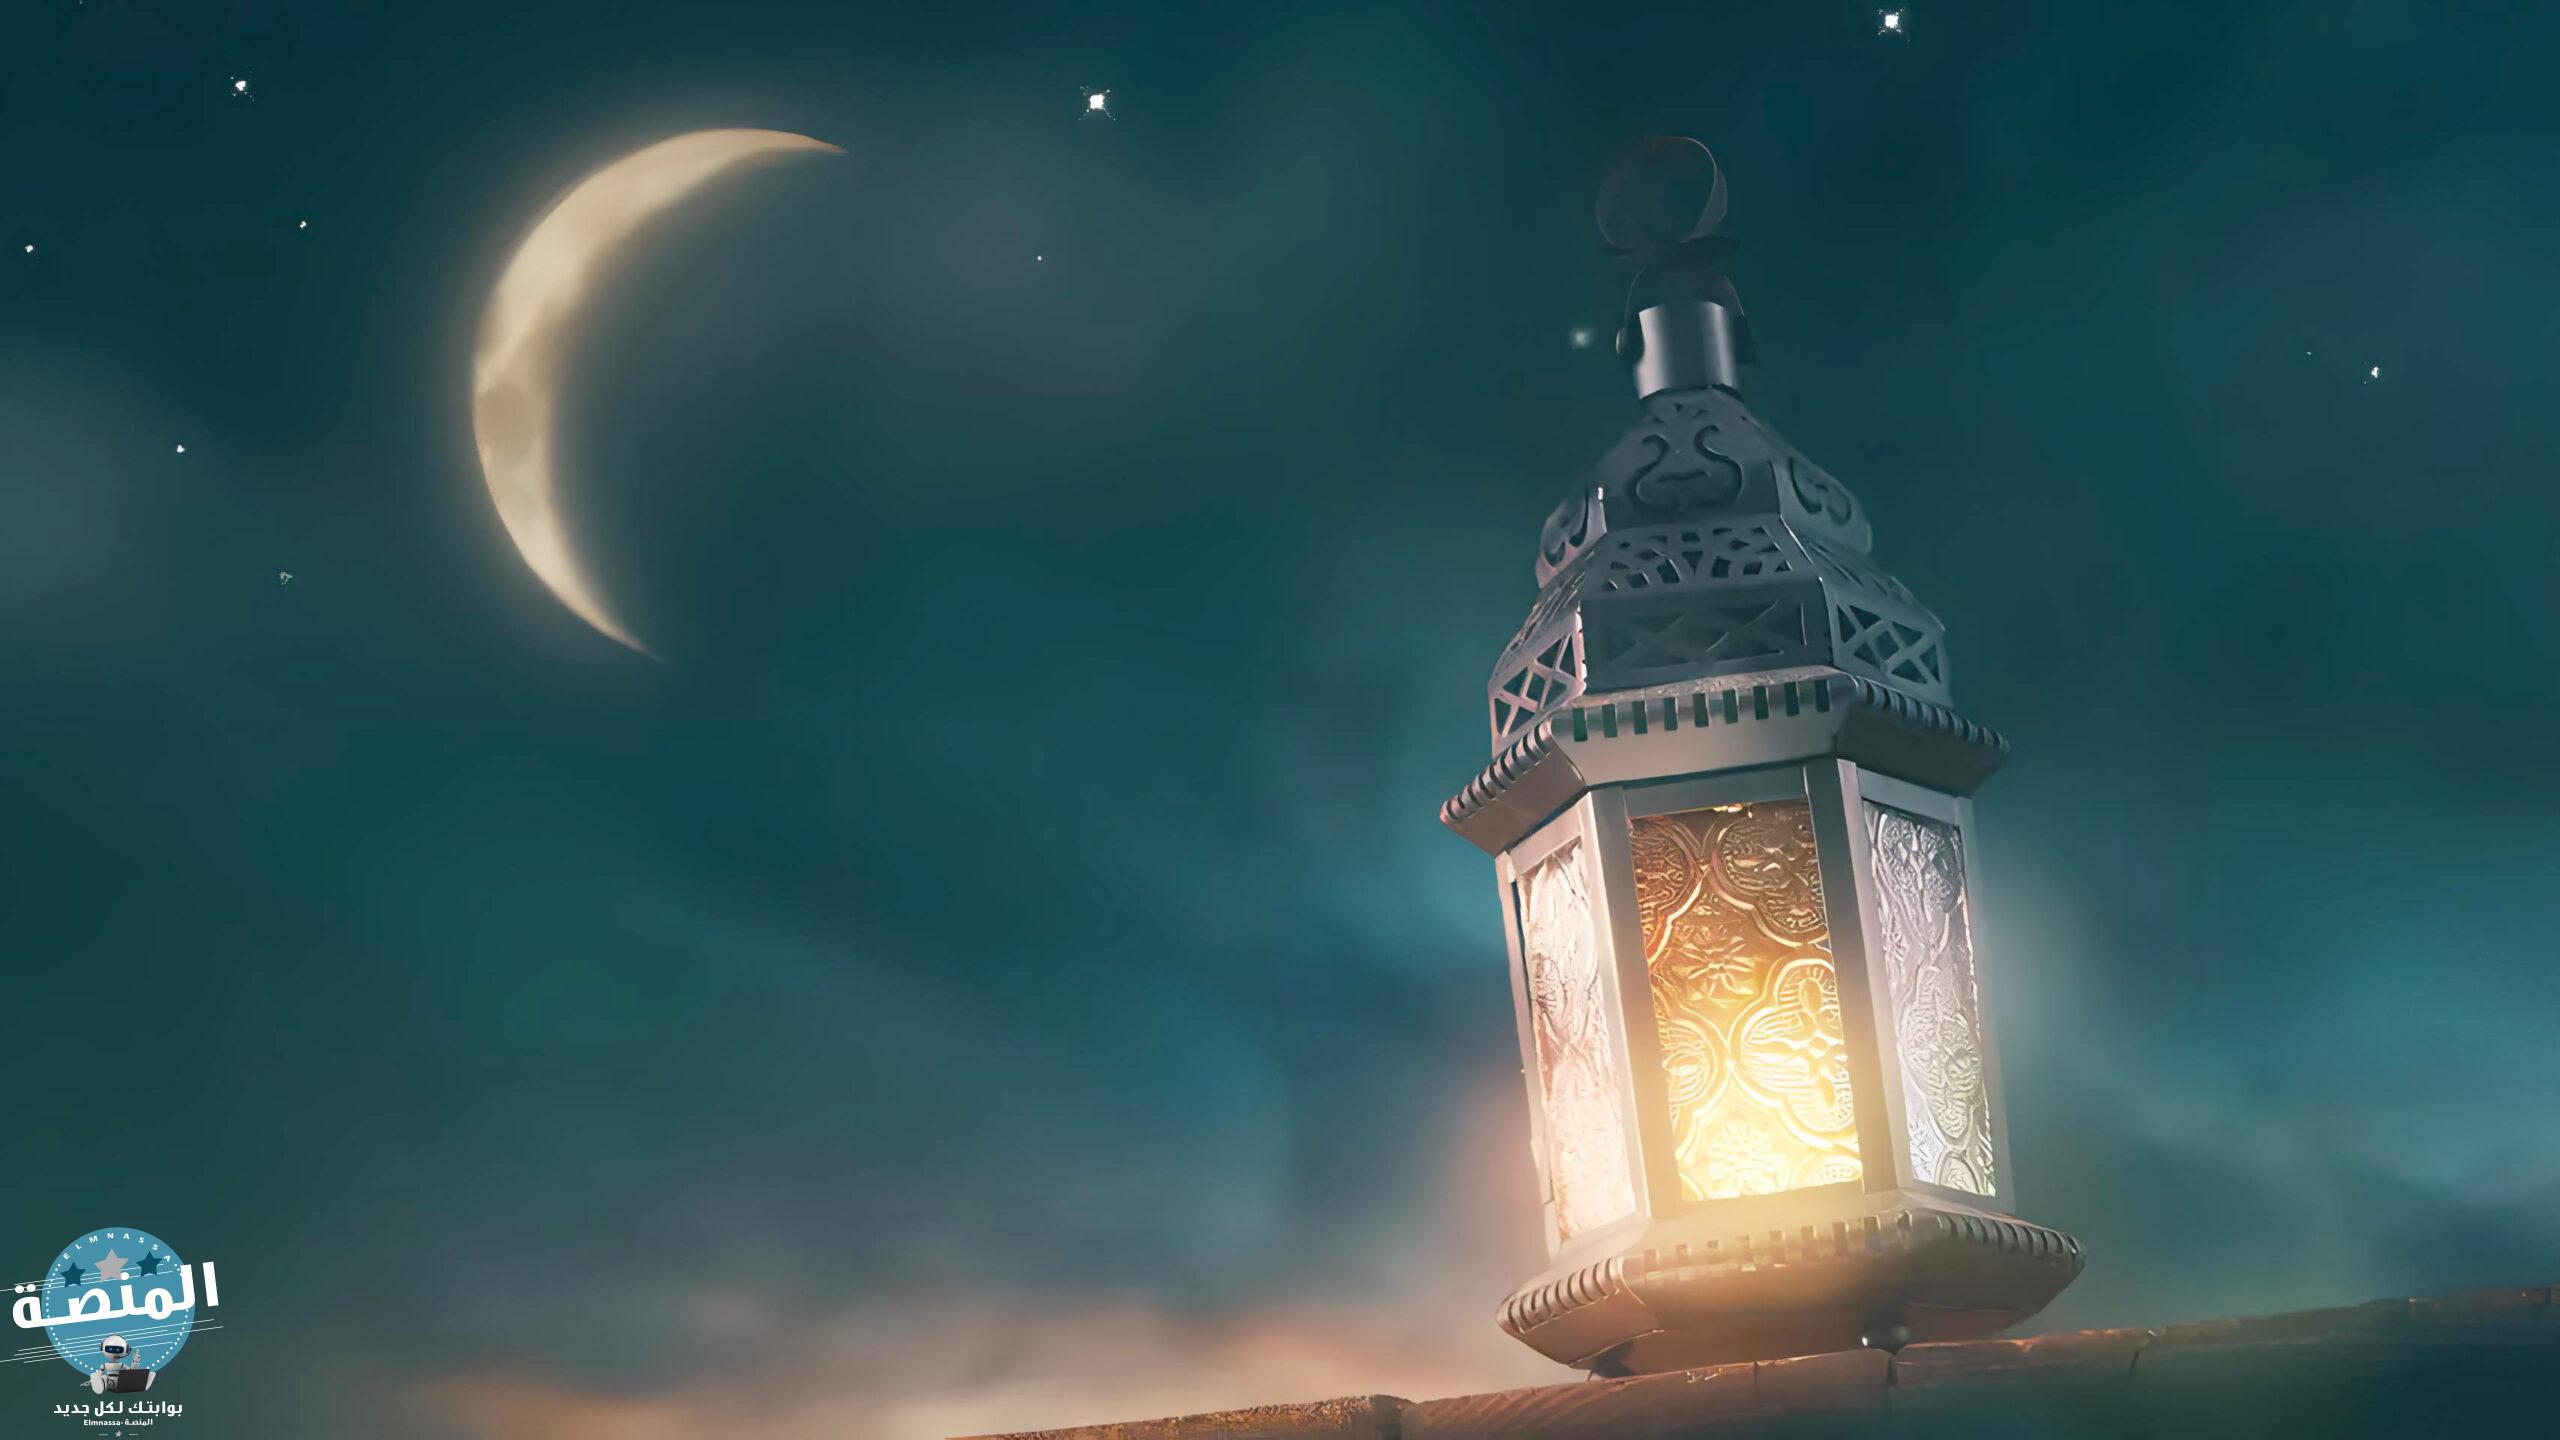 ما صحة حديث أن الله يعتق في اخر ليلة من رمضان